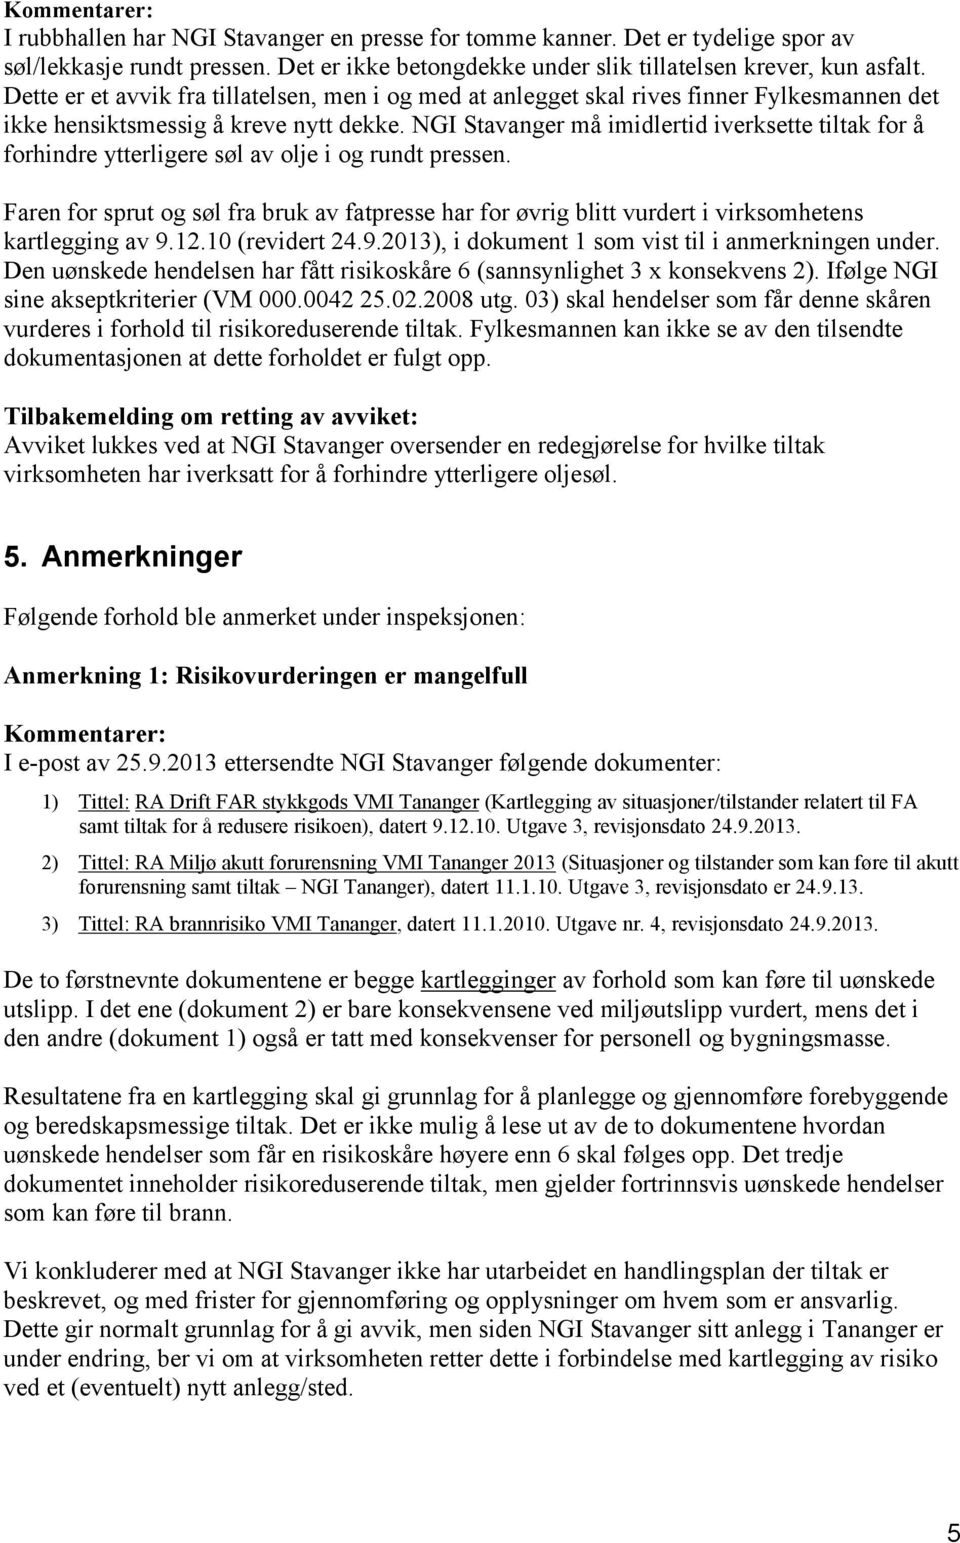 NGI Stavanger må imidlertid iverksette tiltak for å forhindre ytterligere søl av olje i og rundt pressen.